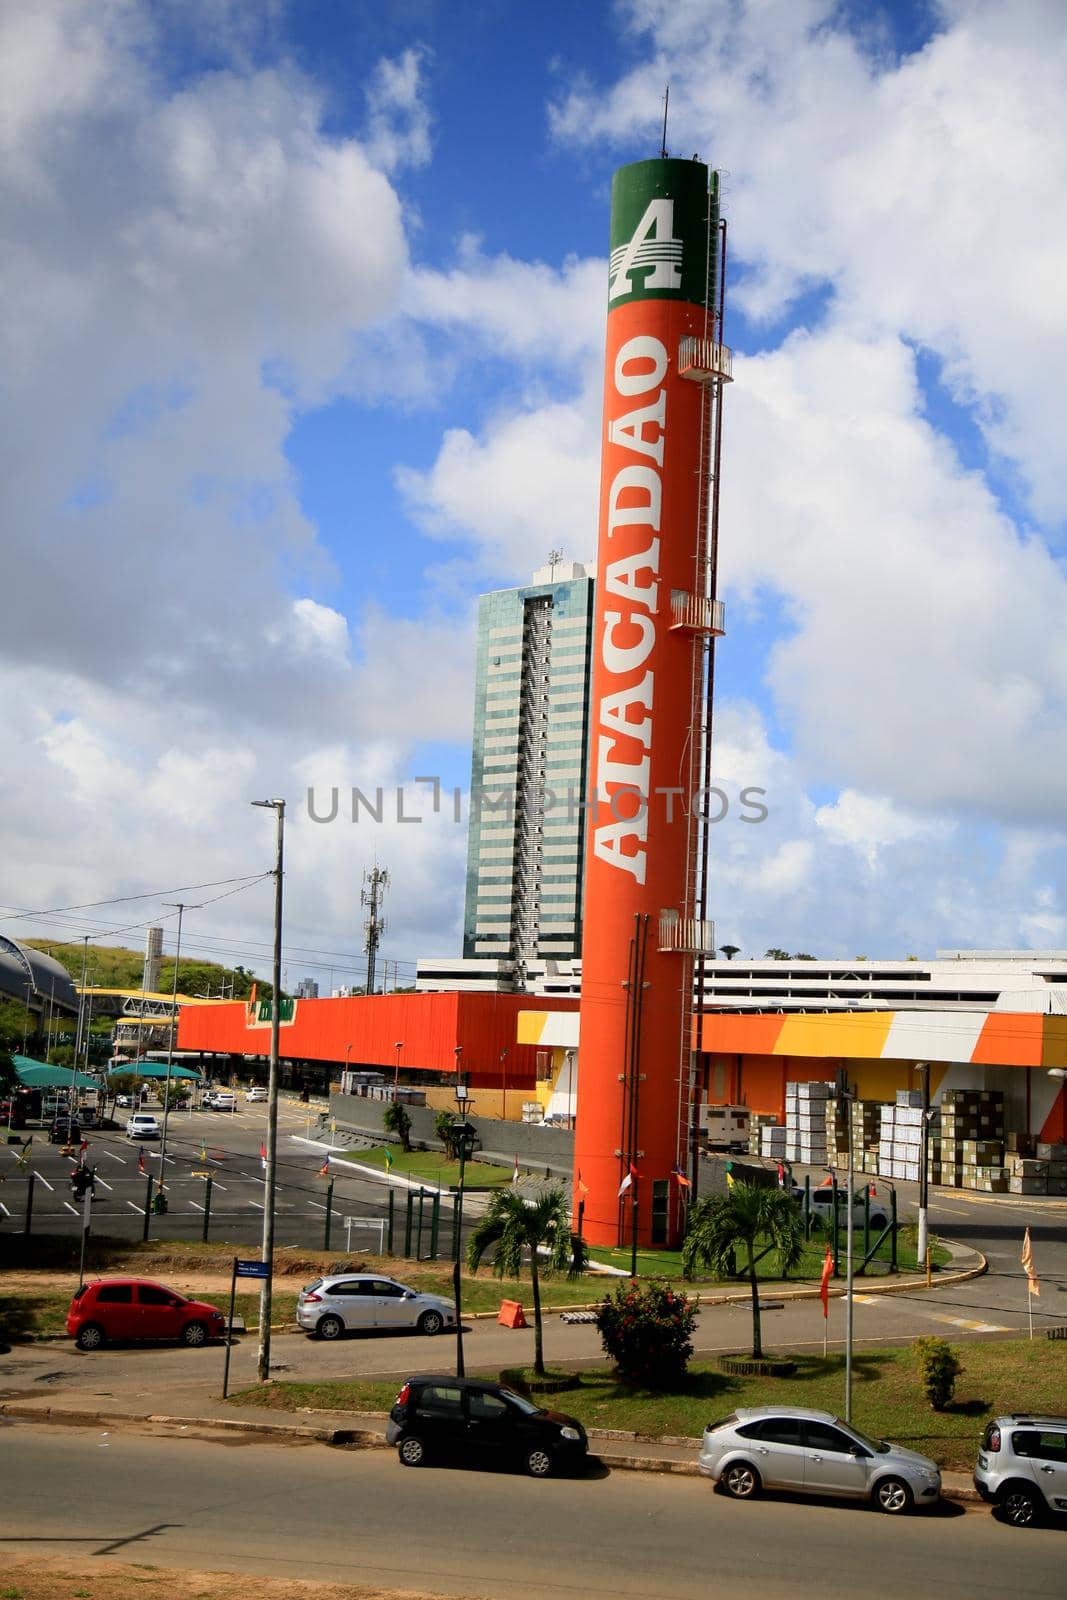 salvador, bahia, brazil - july 20, 2021: Facade of the Atacadao supermarket in the city of Salvador.
